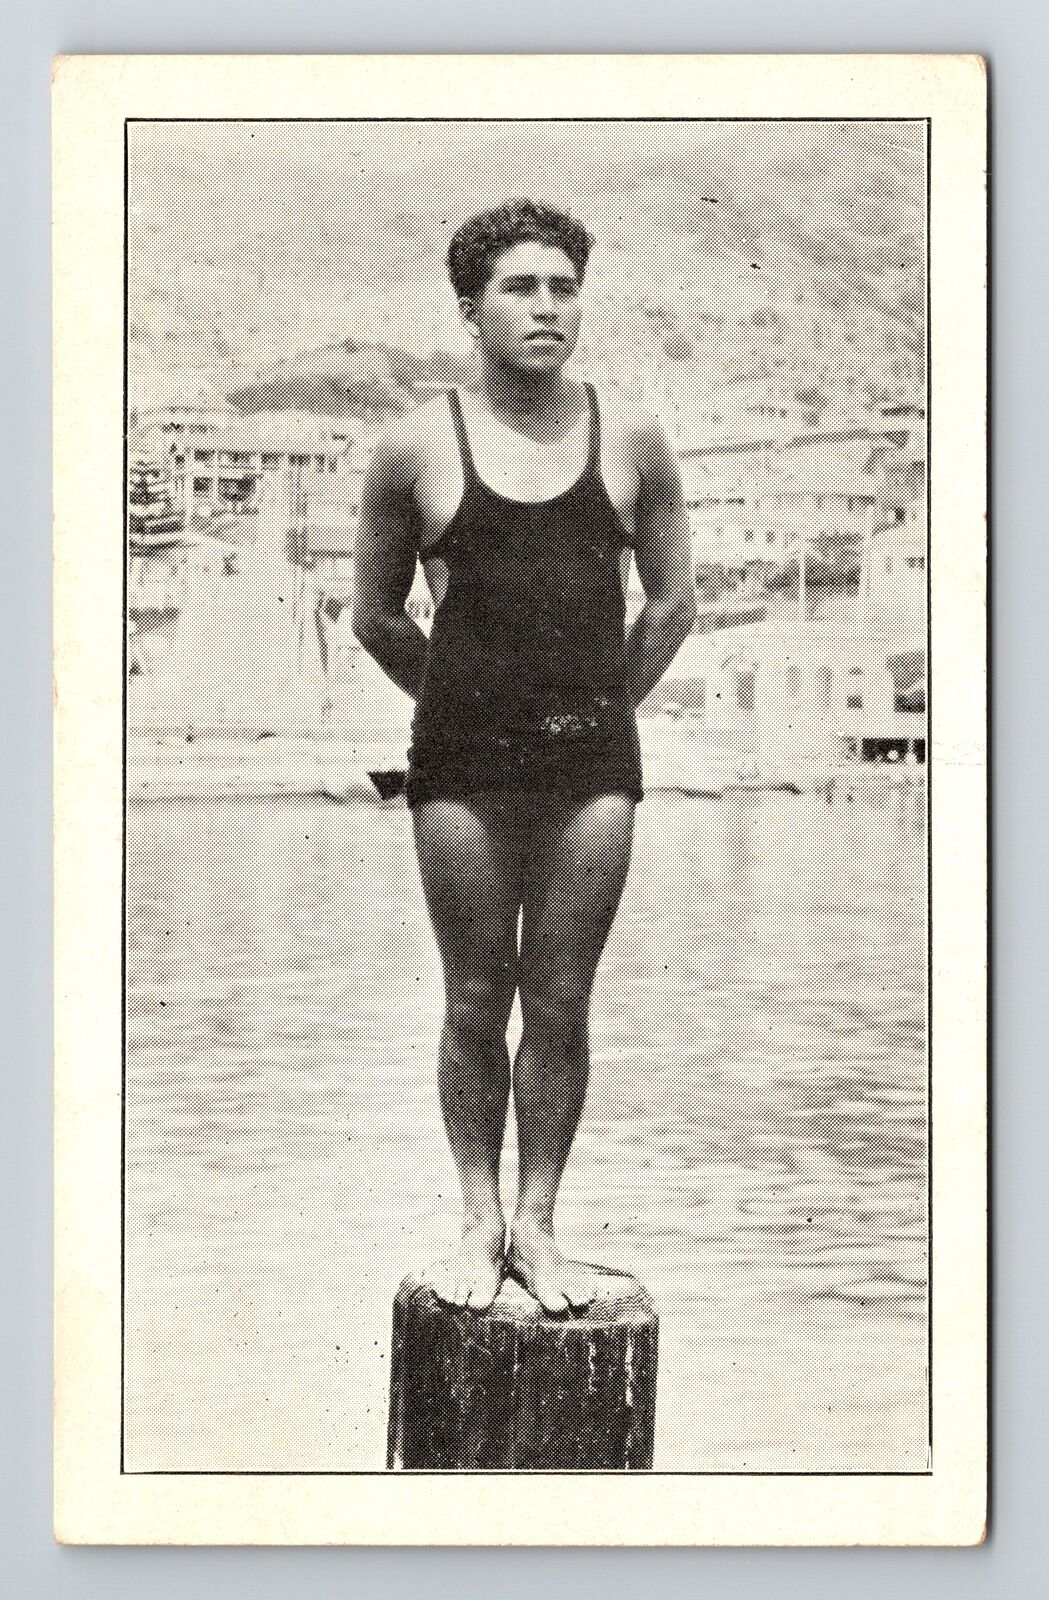 Catalina IslCA-California Marcelino Hernandez Deep Sea Diver Vintage Postcard